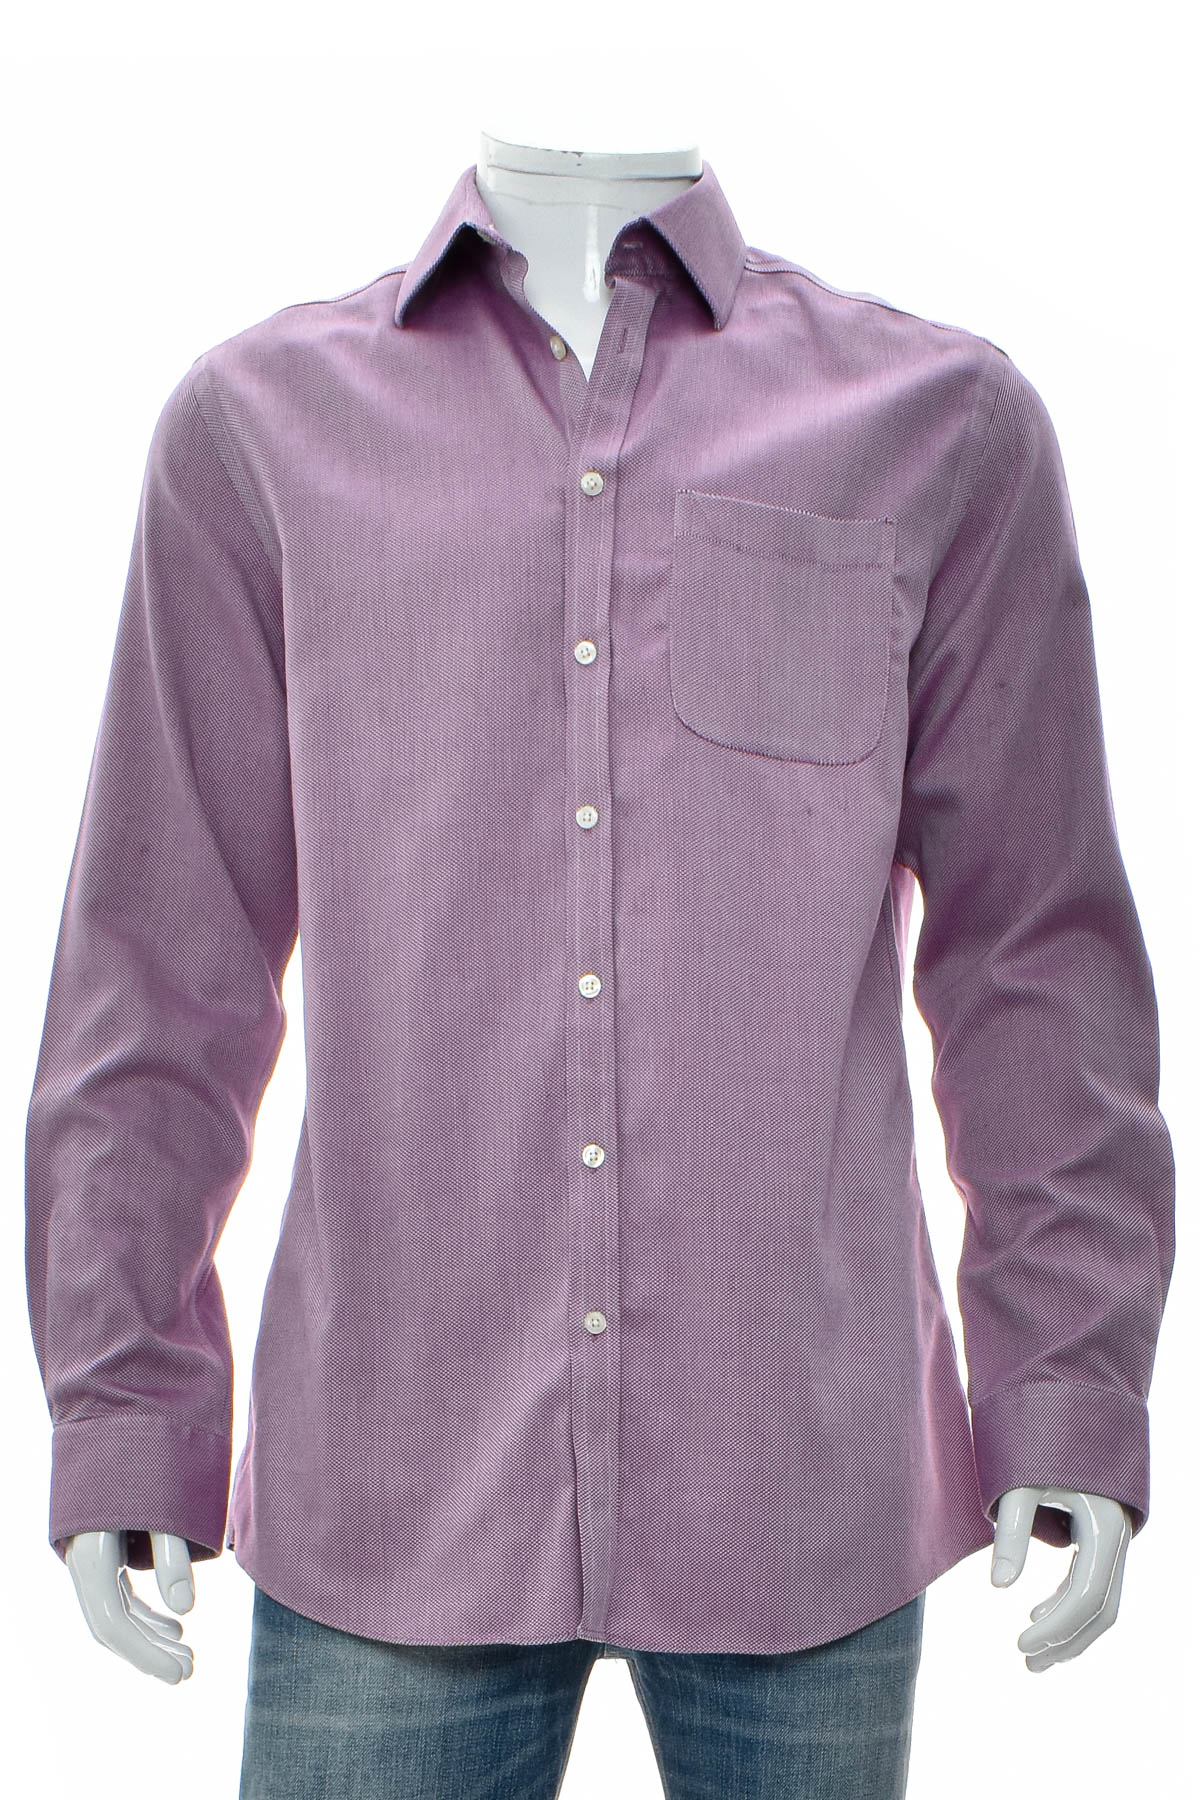 Men's shirt - CHARLES TYRWHITT - 0